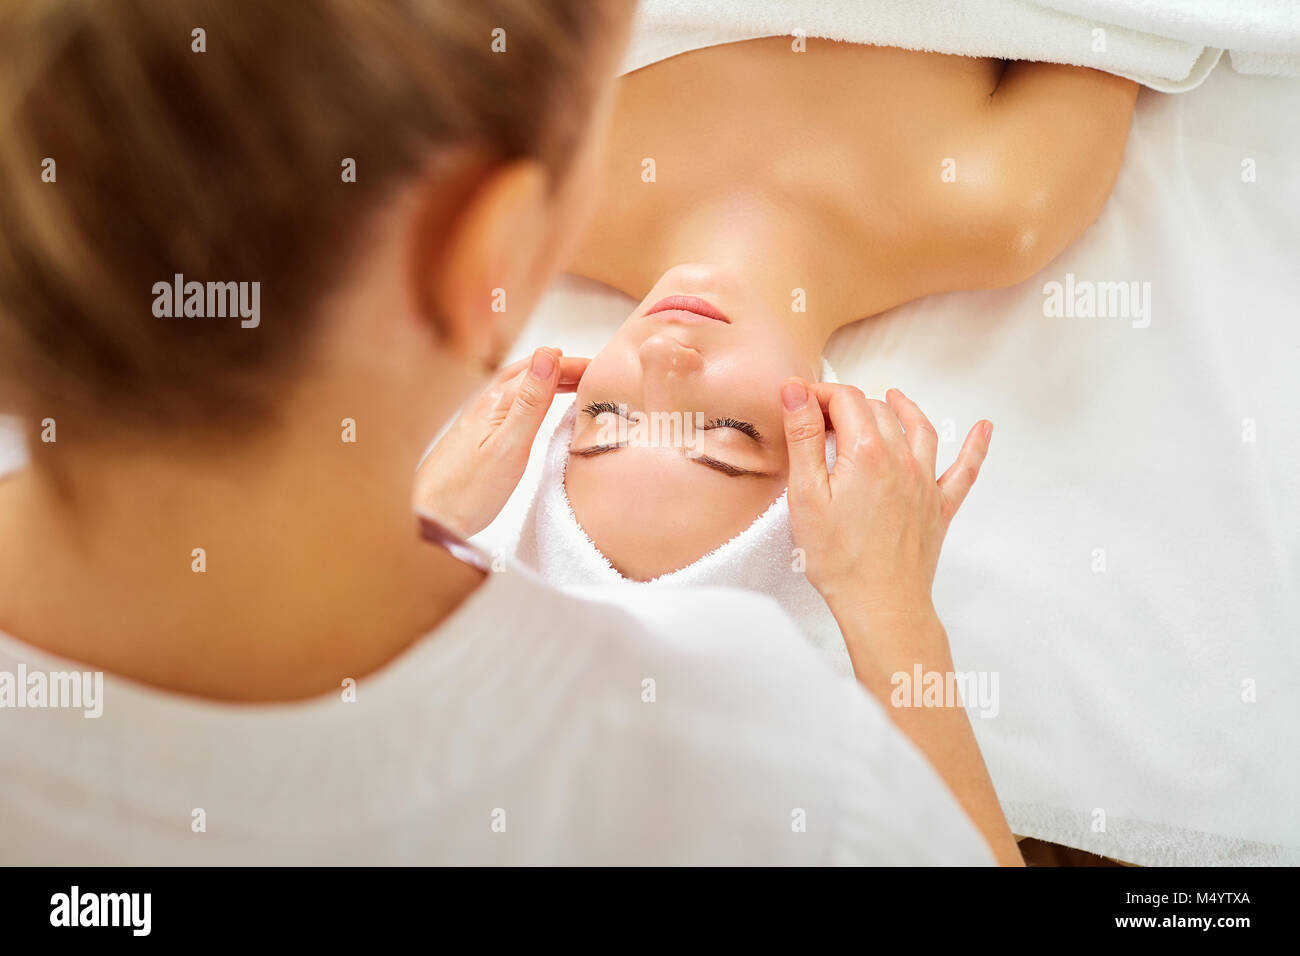 Beautiful woman at a facial massage at a spa salon Stock Photo